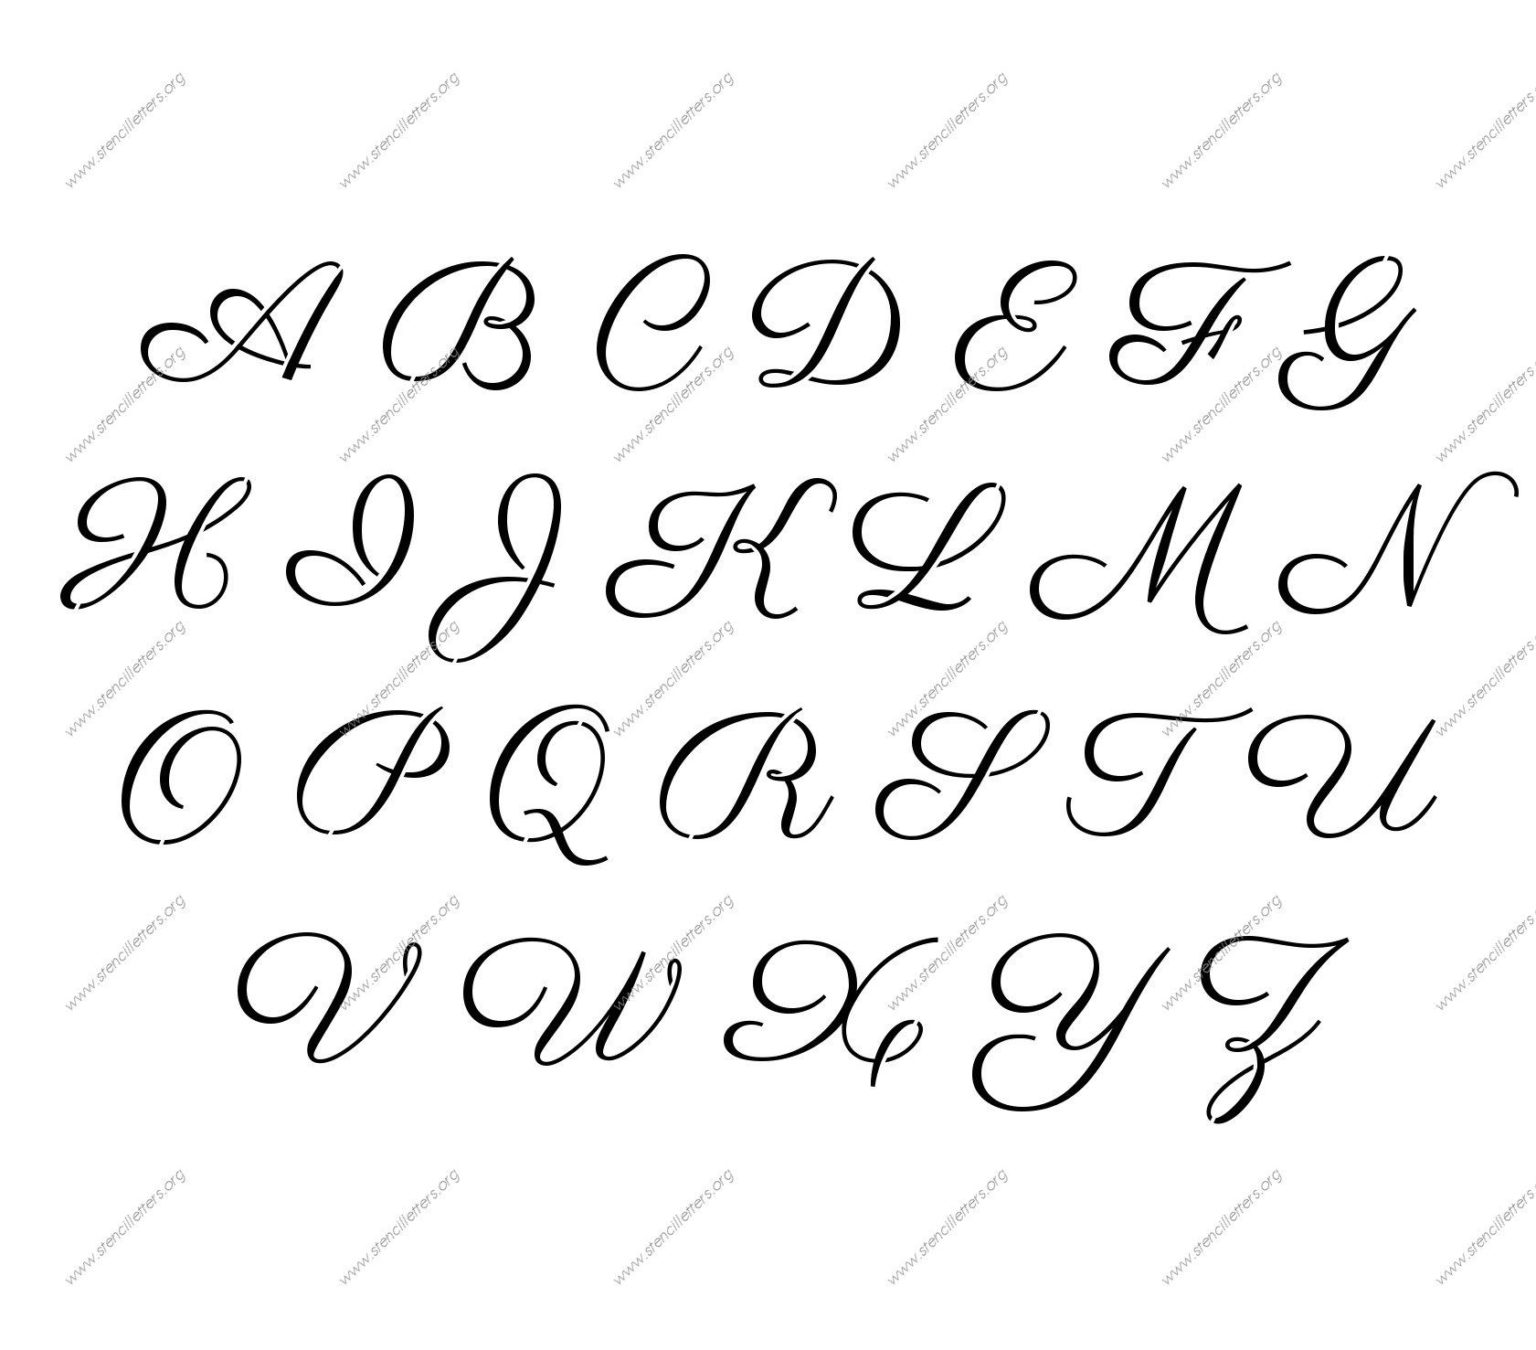 Fancy Alphabet Letter Templates 11+ Professional Templates Ideas